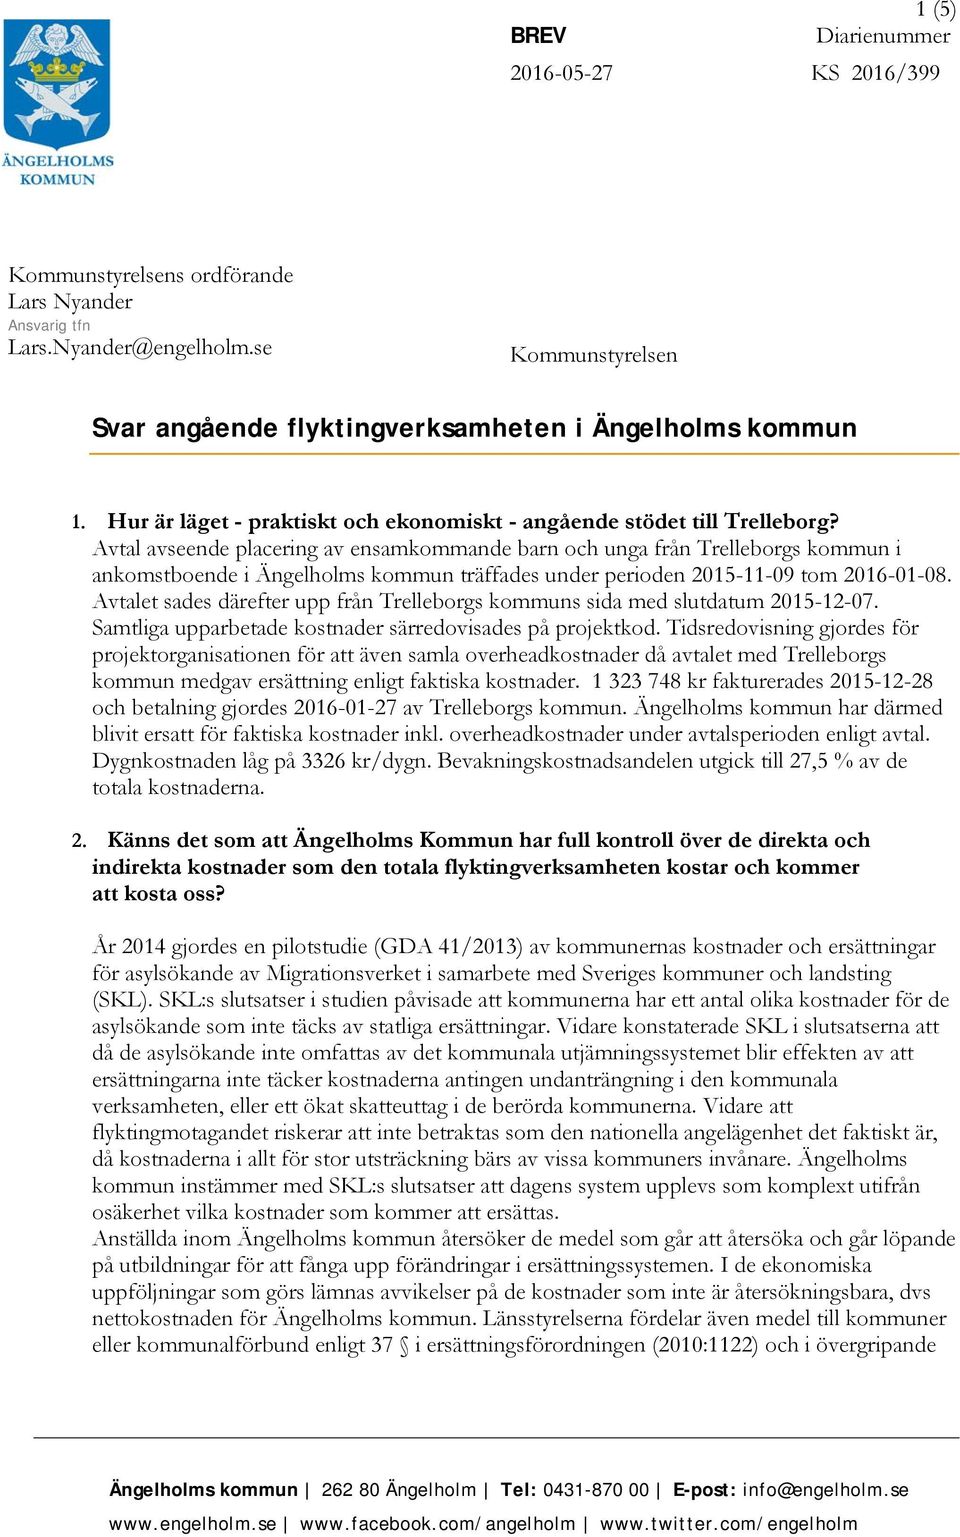 Avtal avseende placering av ensamkommande barn och unga från Trelleborgs kommun i ankomstboende i Ängelholms kommun träffades under perioden 2015-11-09 tom 2016-01-08.